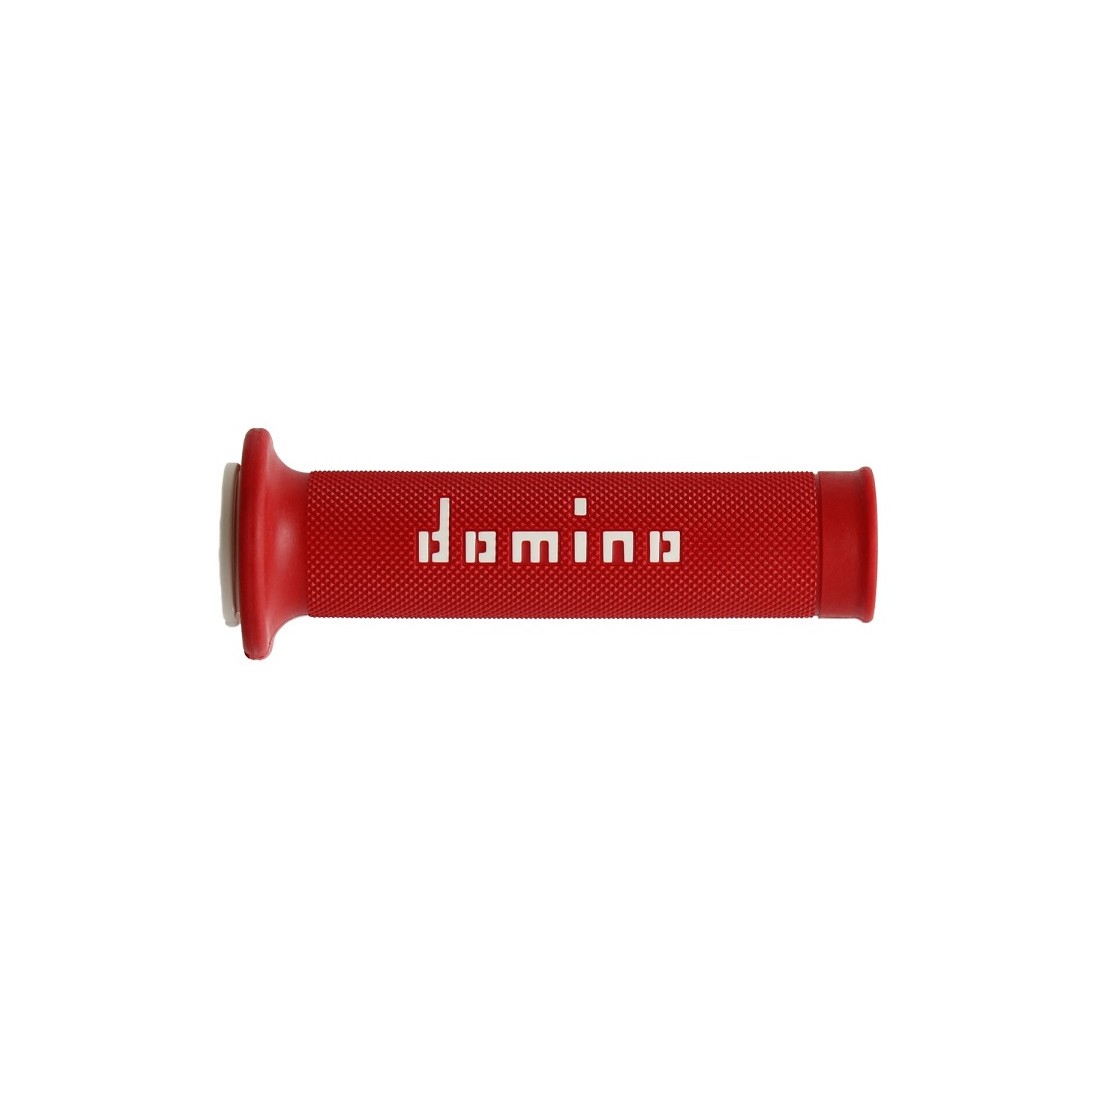 Puños Domino On Road Rojo/Blanco Abiertos D 22 mm L 120-125